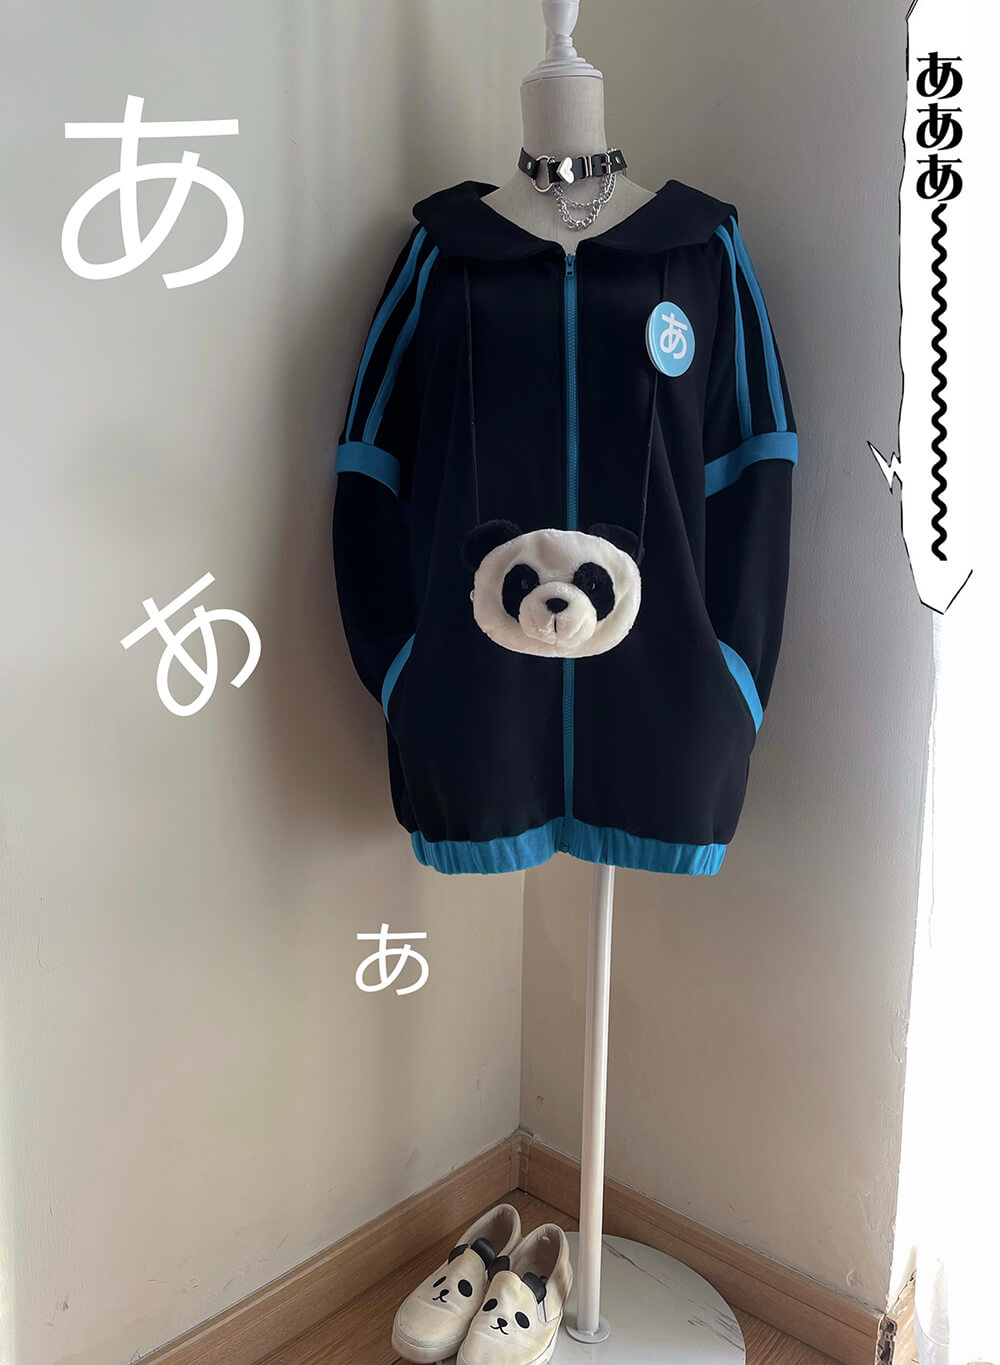 japanese-high-school-uniform-full-zip-fleece-sports-jacket-in-black-blue